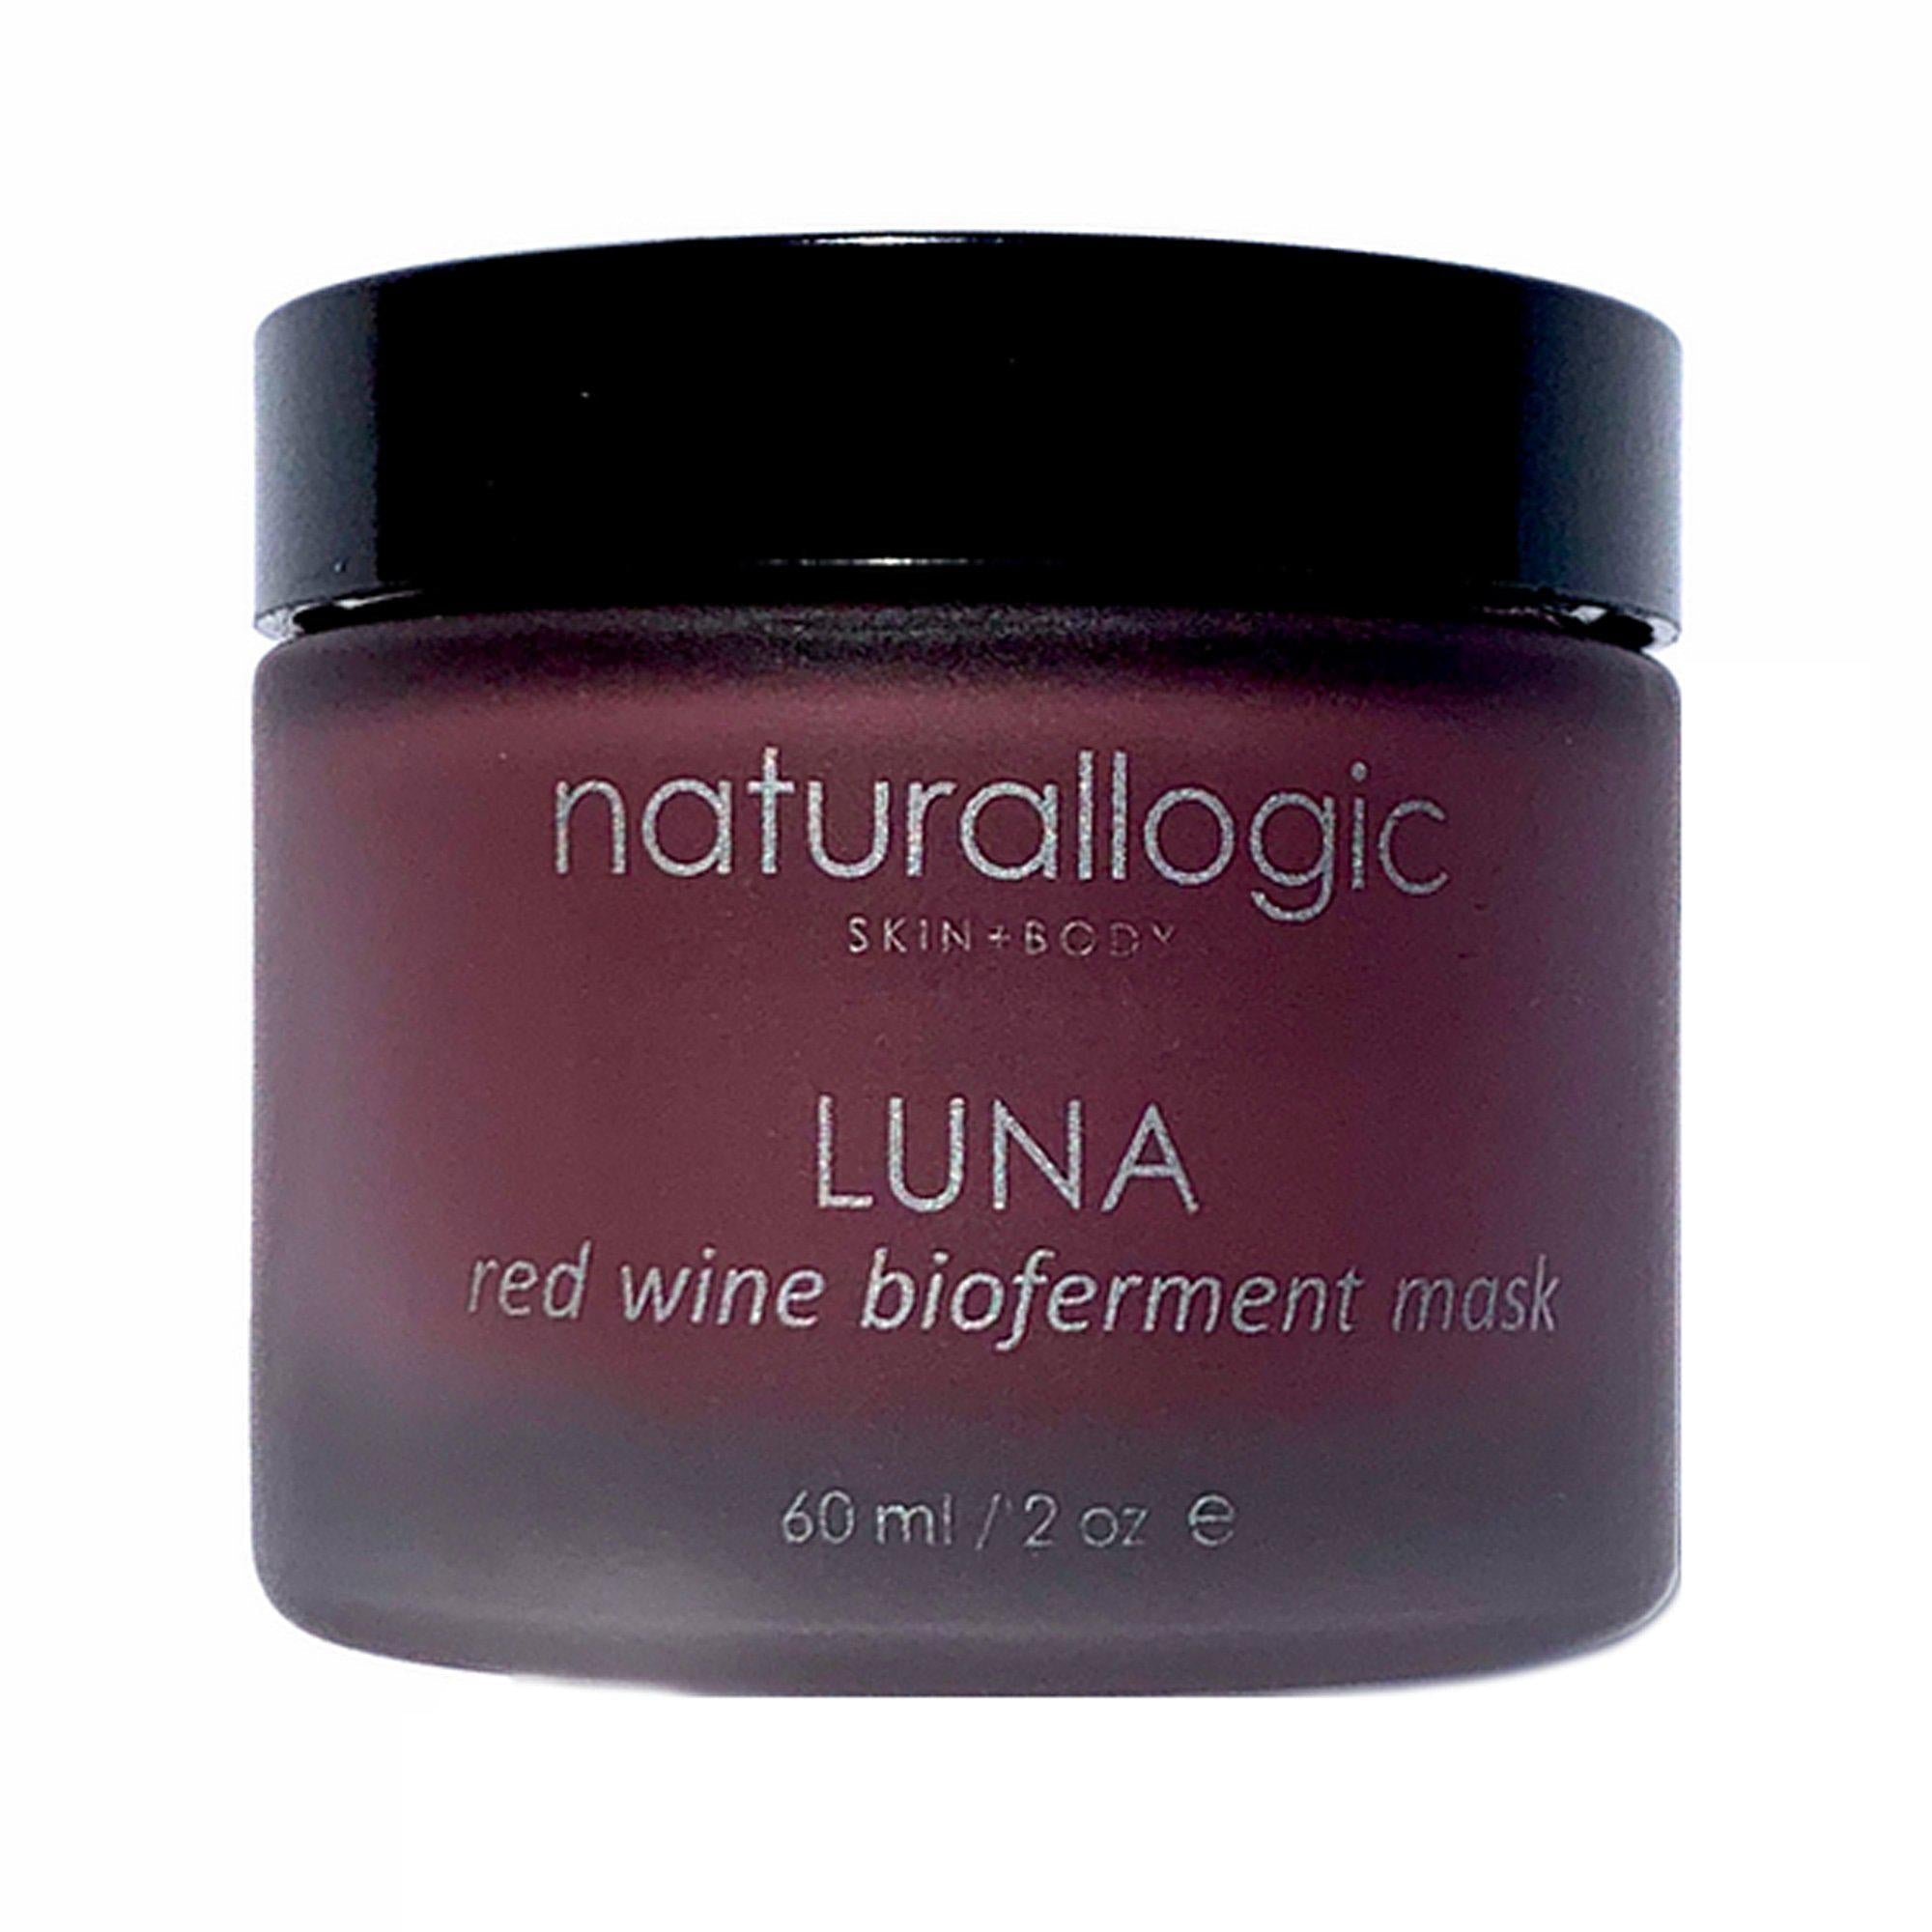 Indisponible - Luna - Masque Bio-fermenté au vin rouge - Edition Limitée Unavailable - Luna - Bio-fermented mask with red wine - Limited Edition - Naturallogic